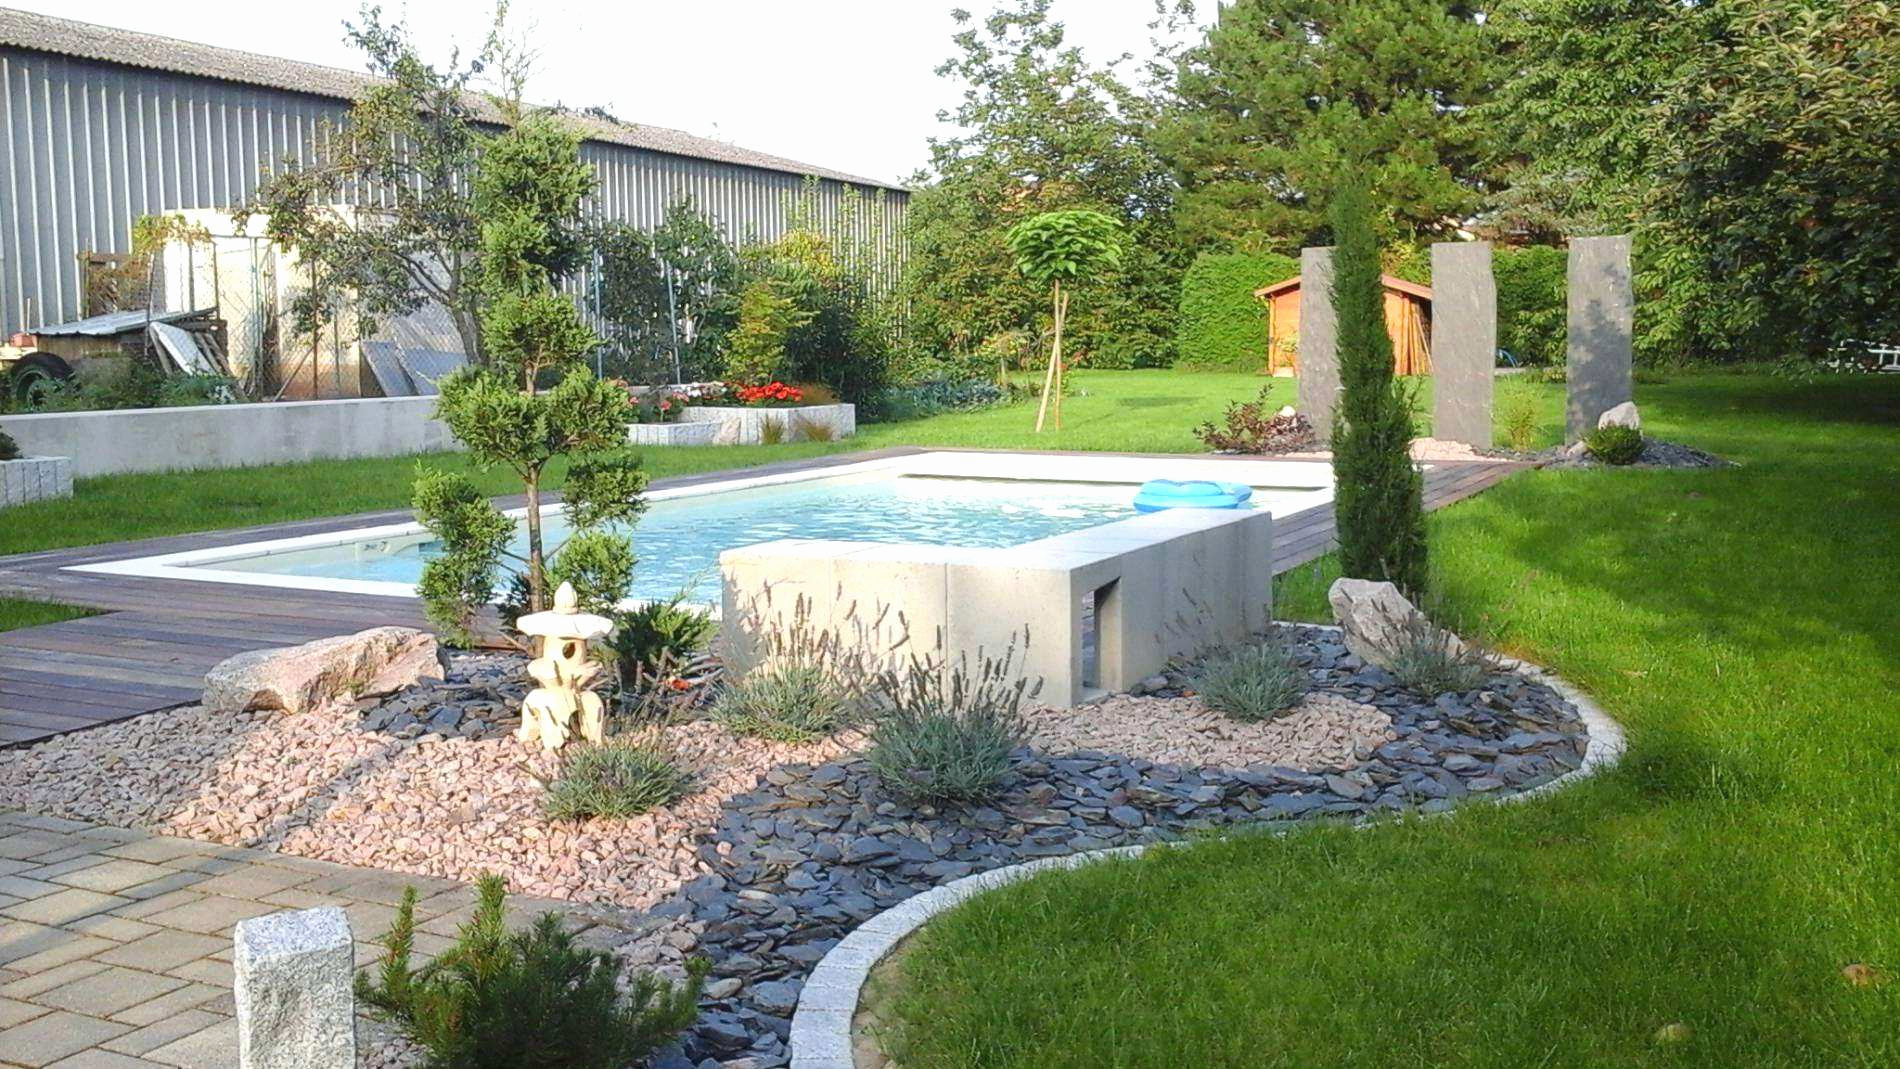 terrasse bois piscine hors sol meilleur de jardin et piscine piscine hors sol terrasse bois luxe piscine en of terrasse bois piscine hors sol